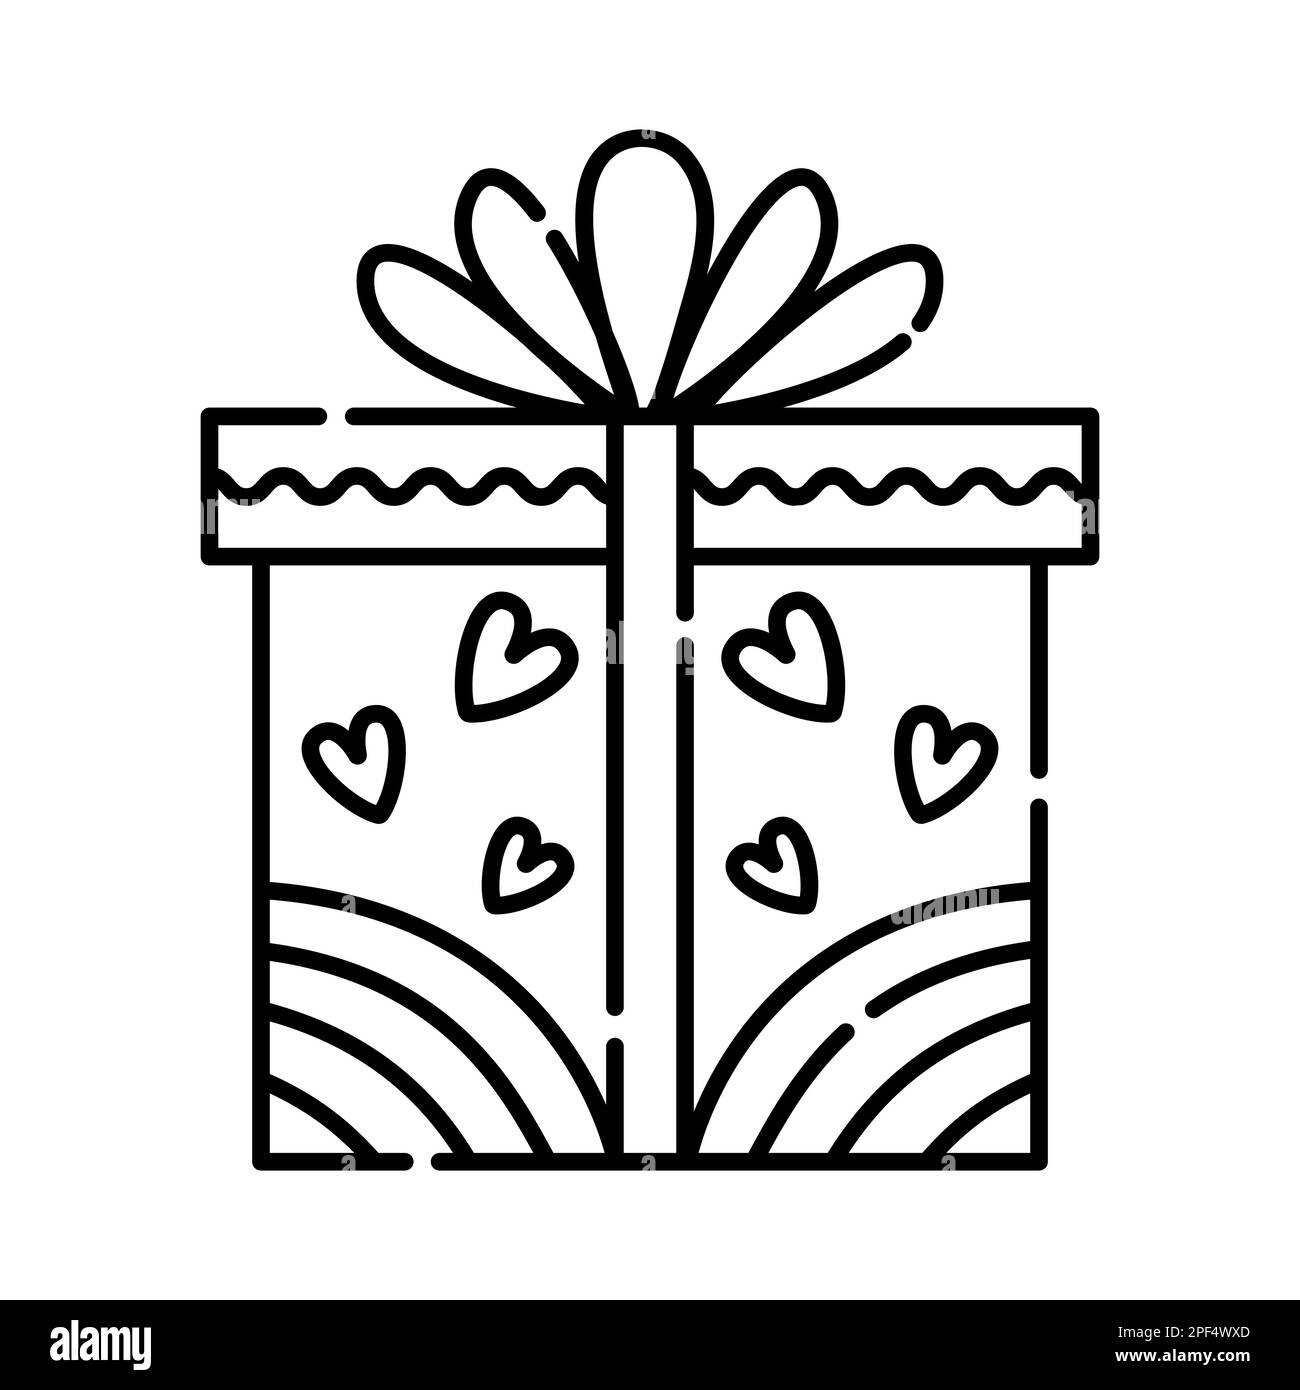 Gift box, black line illustration Stock Vector